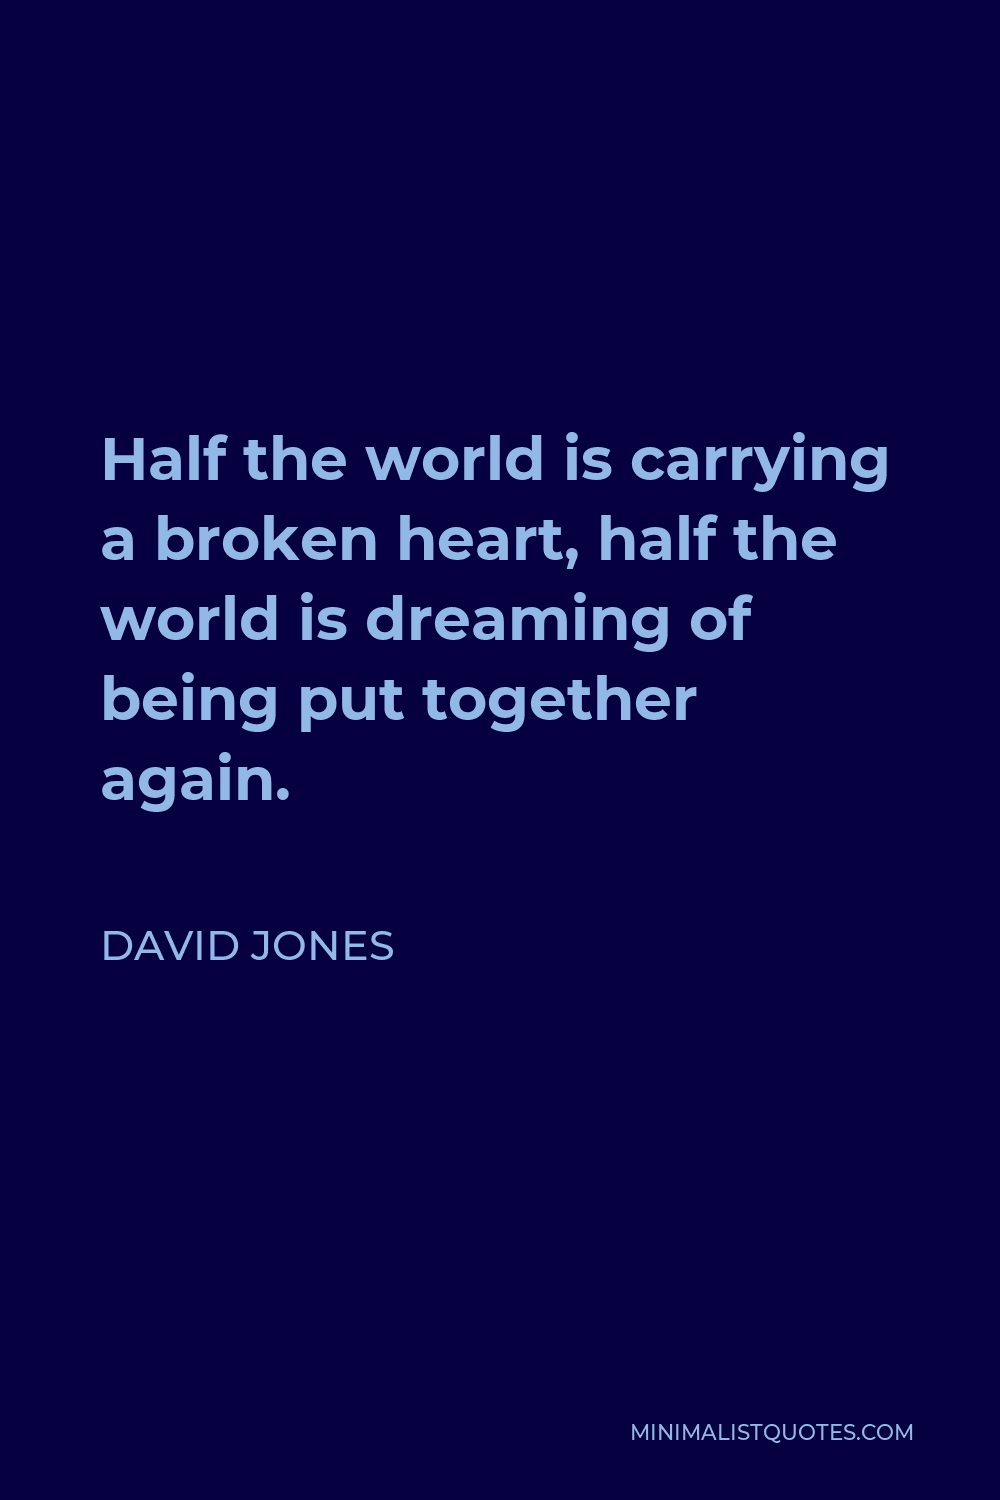 David Jones Quote: Half the world is carrying a broken heart, half the ...